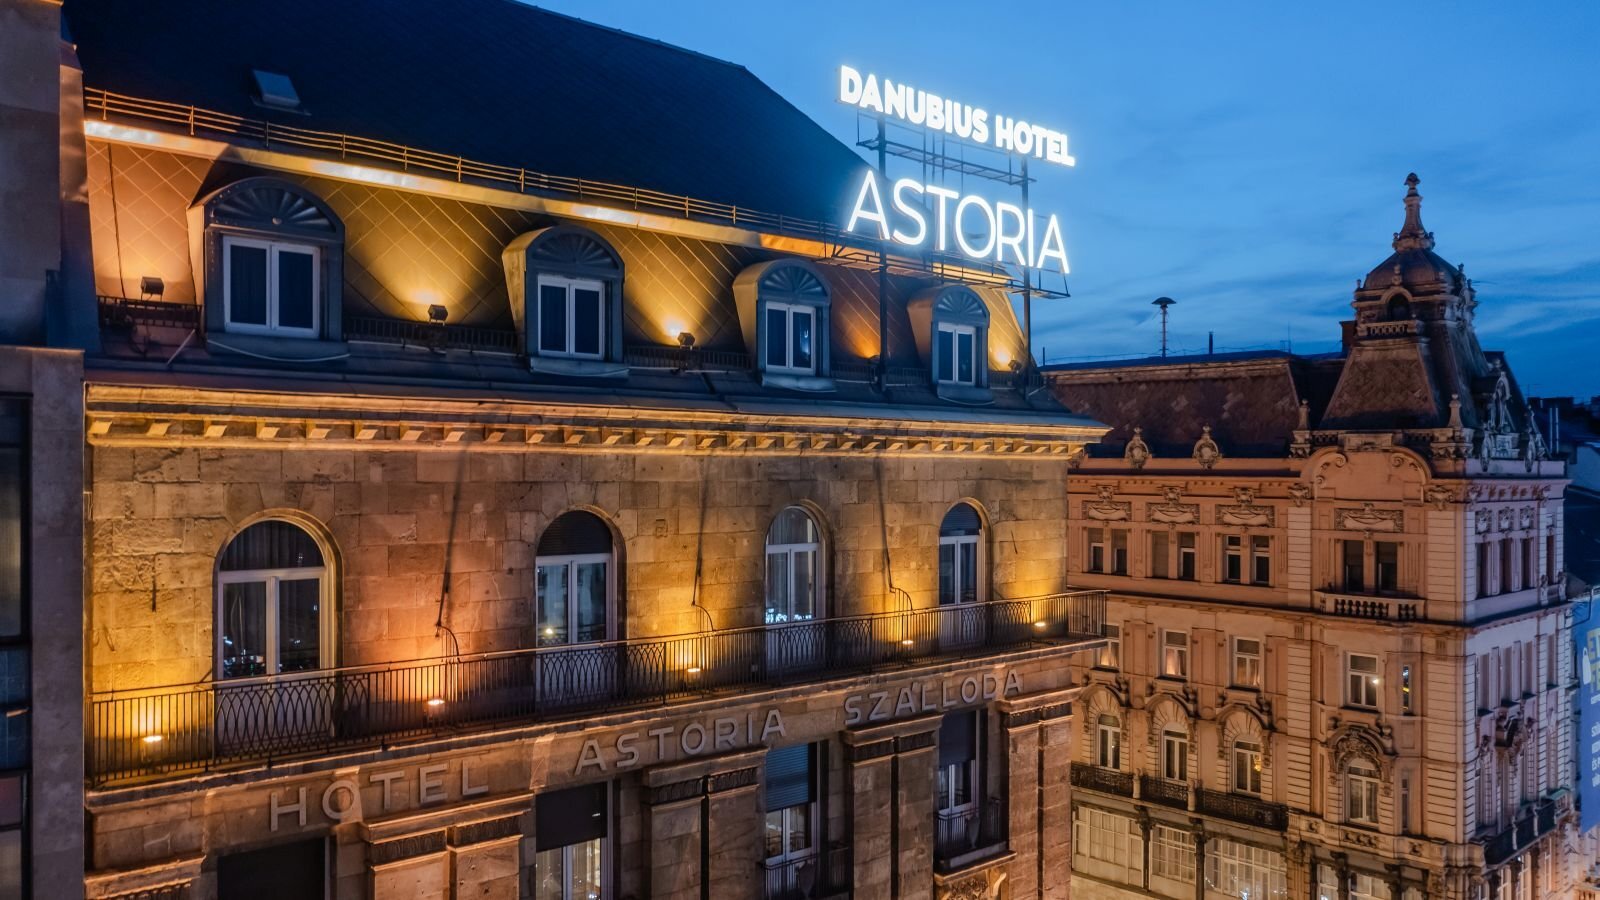 Budapest Airport to Danubius Hotel Astoria 